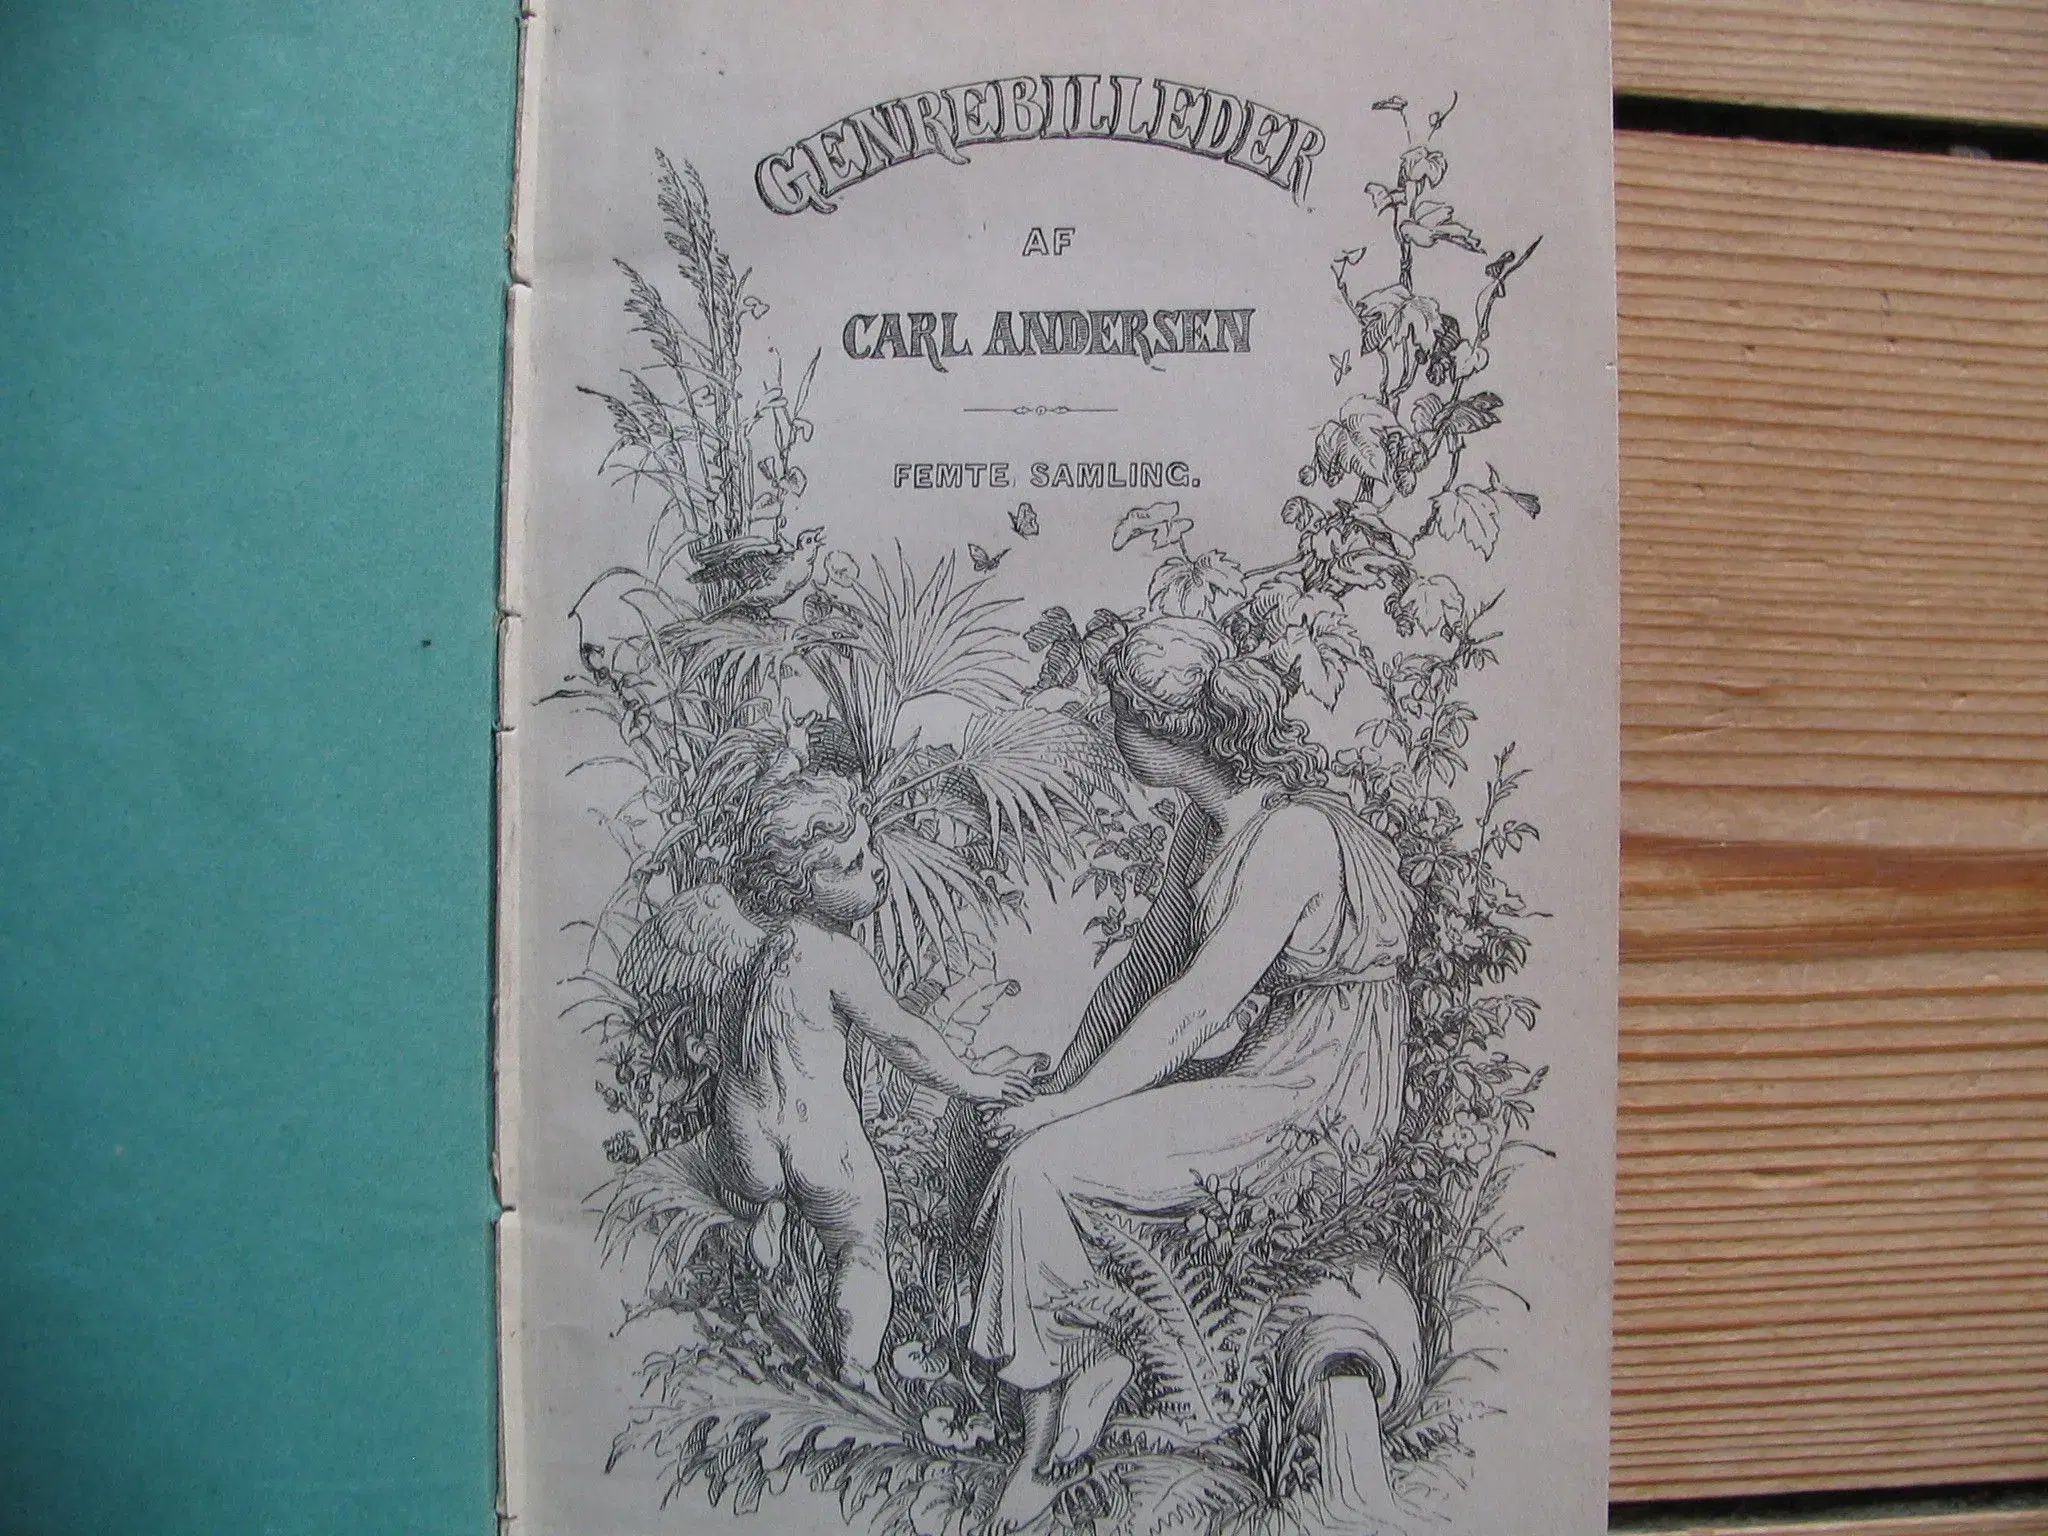 Carl Andersen Genrebilleder fra 1877